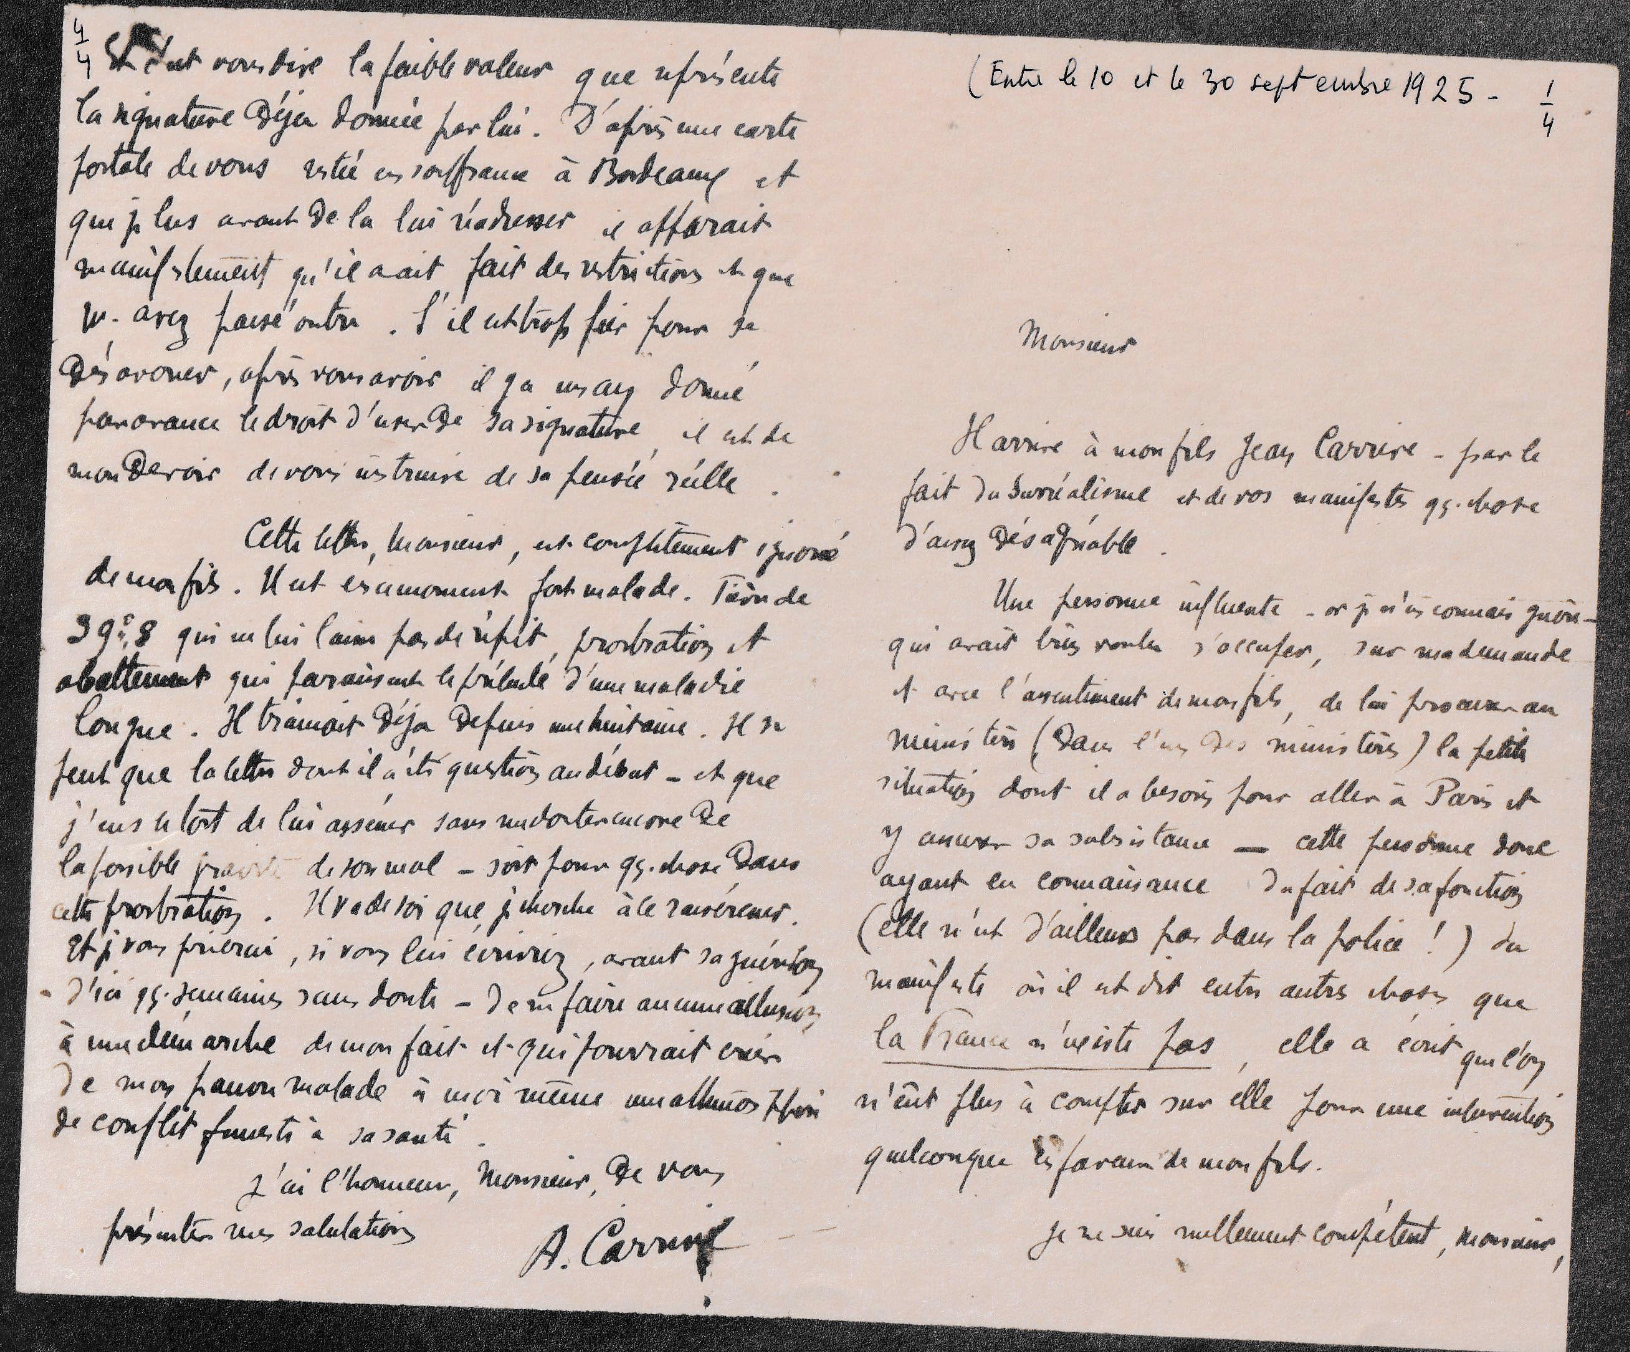 Lettre d'Adolphe Carrive à André Breton, septembre 1925, recto